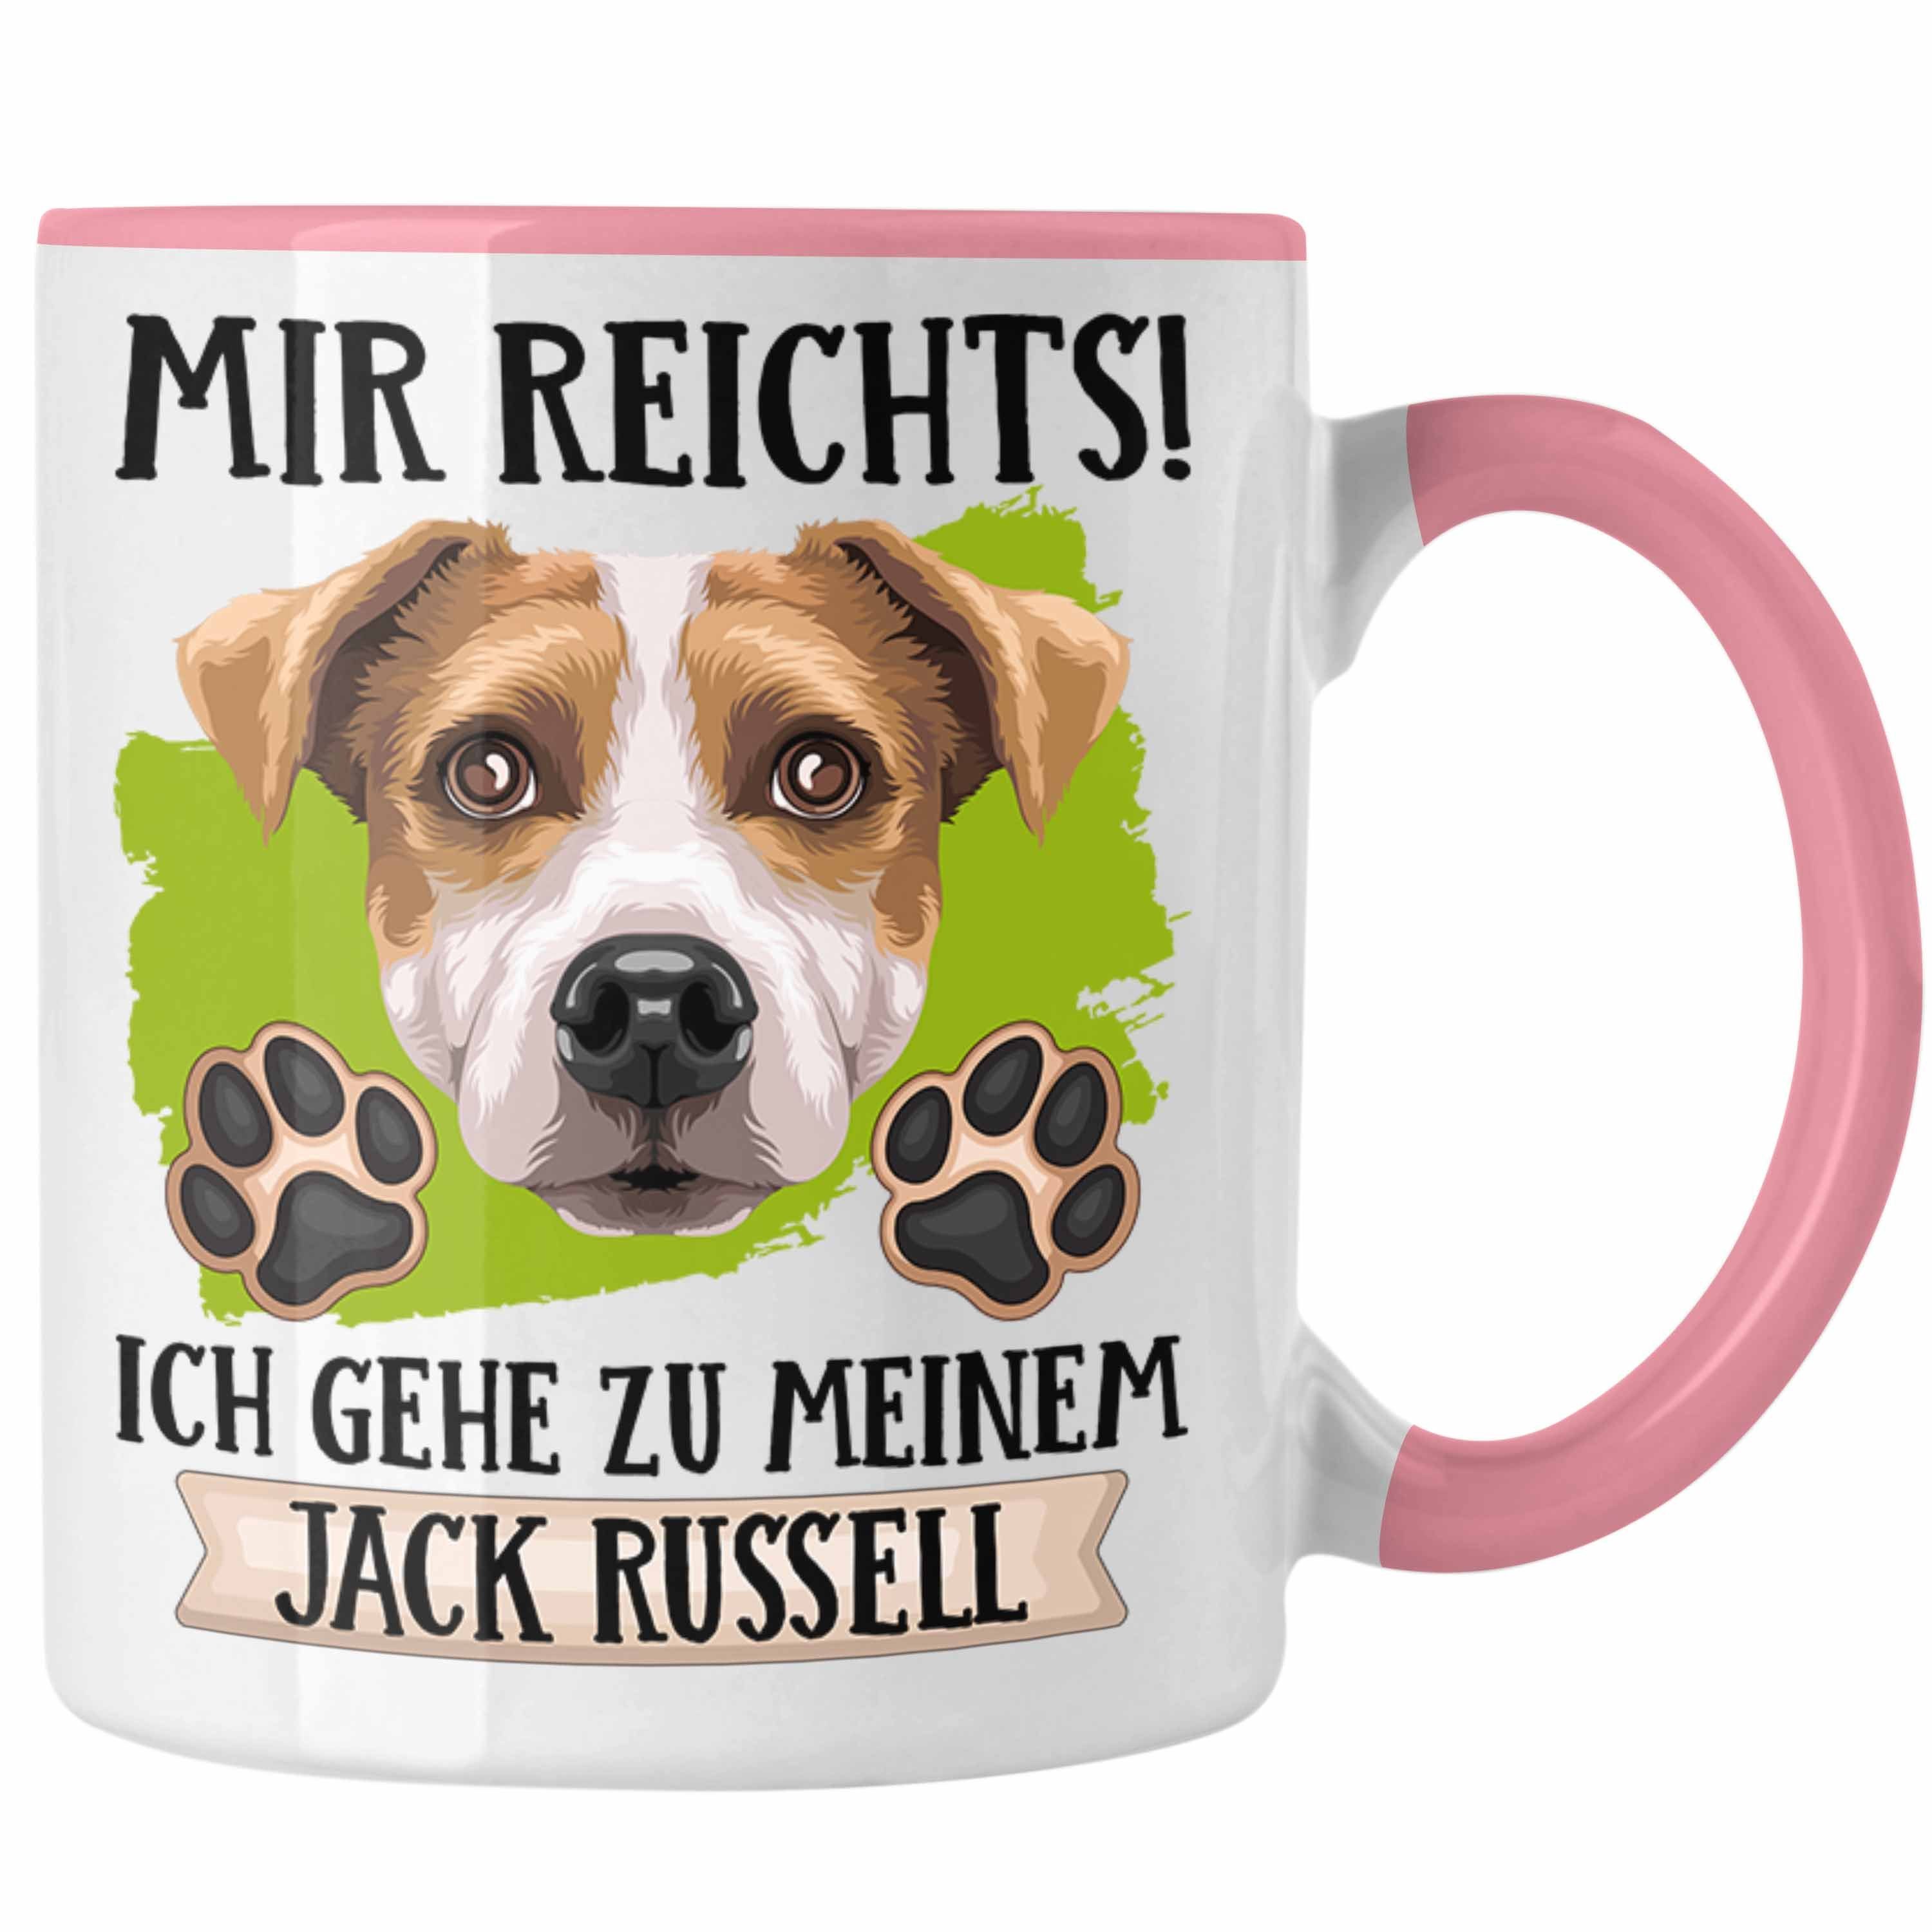 Mir Trendation Tasse Geschenk Jack Besitzer R Spruch Geschenkidee Rosa Tasse Russel Lustiger